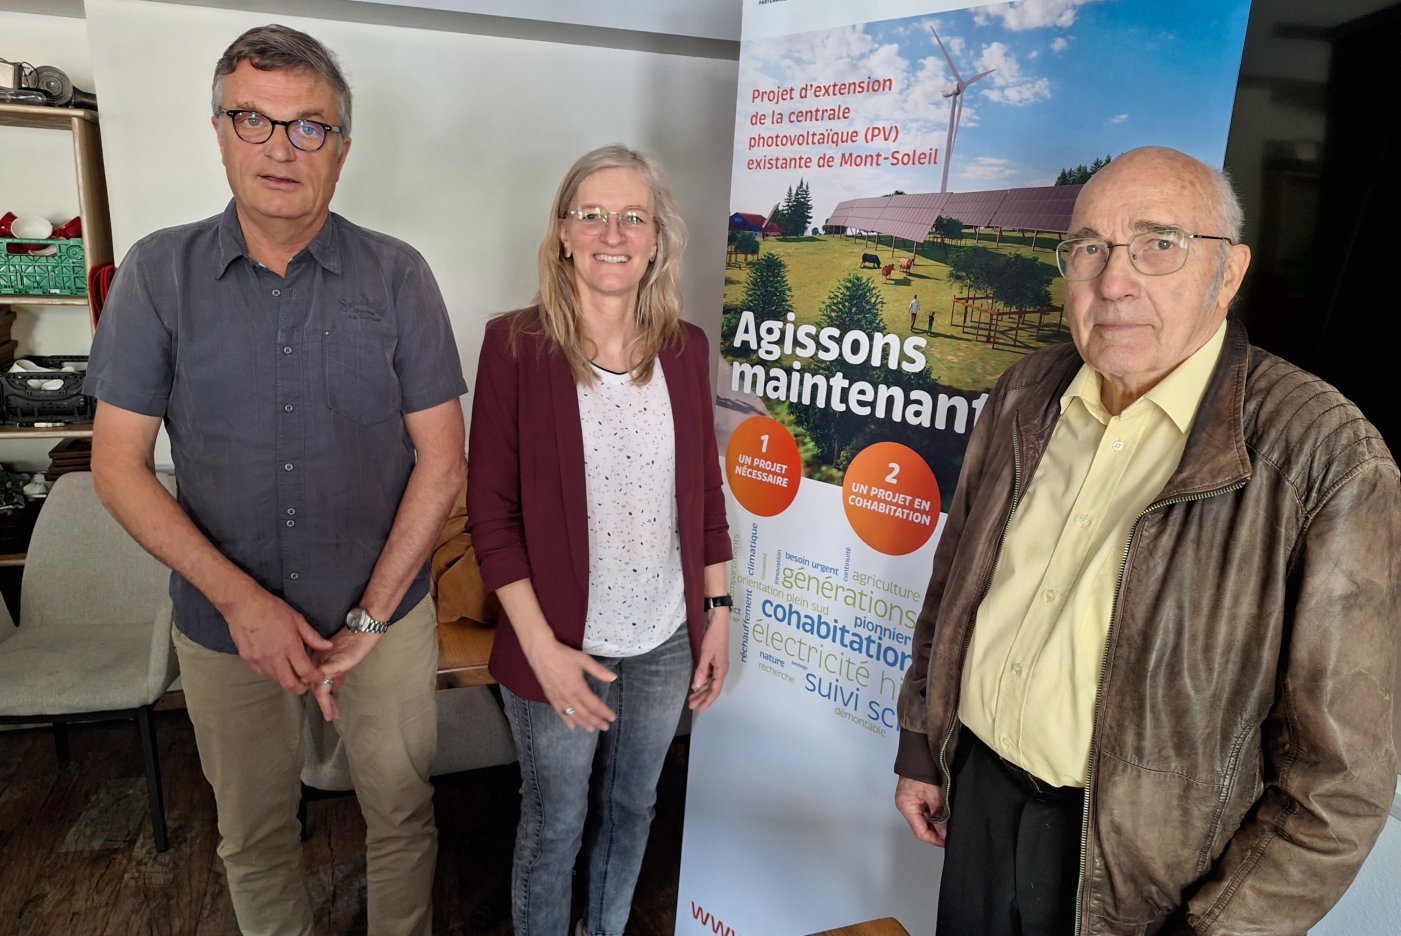 François Nyfeler, Elisabeth Beck, Jacques Zumstein (de g. à droite) ont présenté les arguments d'un groupe de soutien en faveur de l'extension de la centrale photovoltaïque de Mont-Soleil